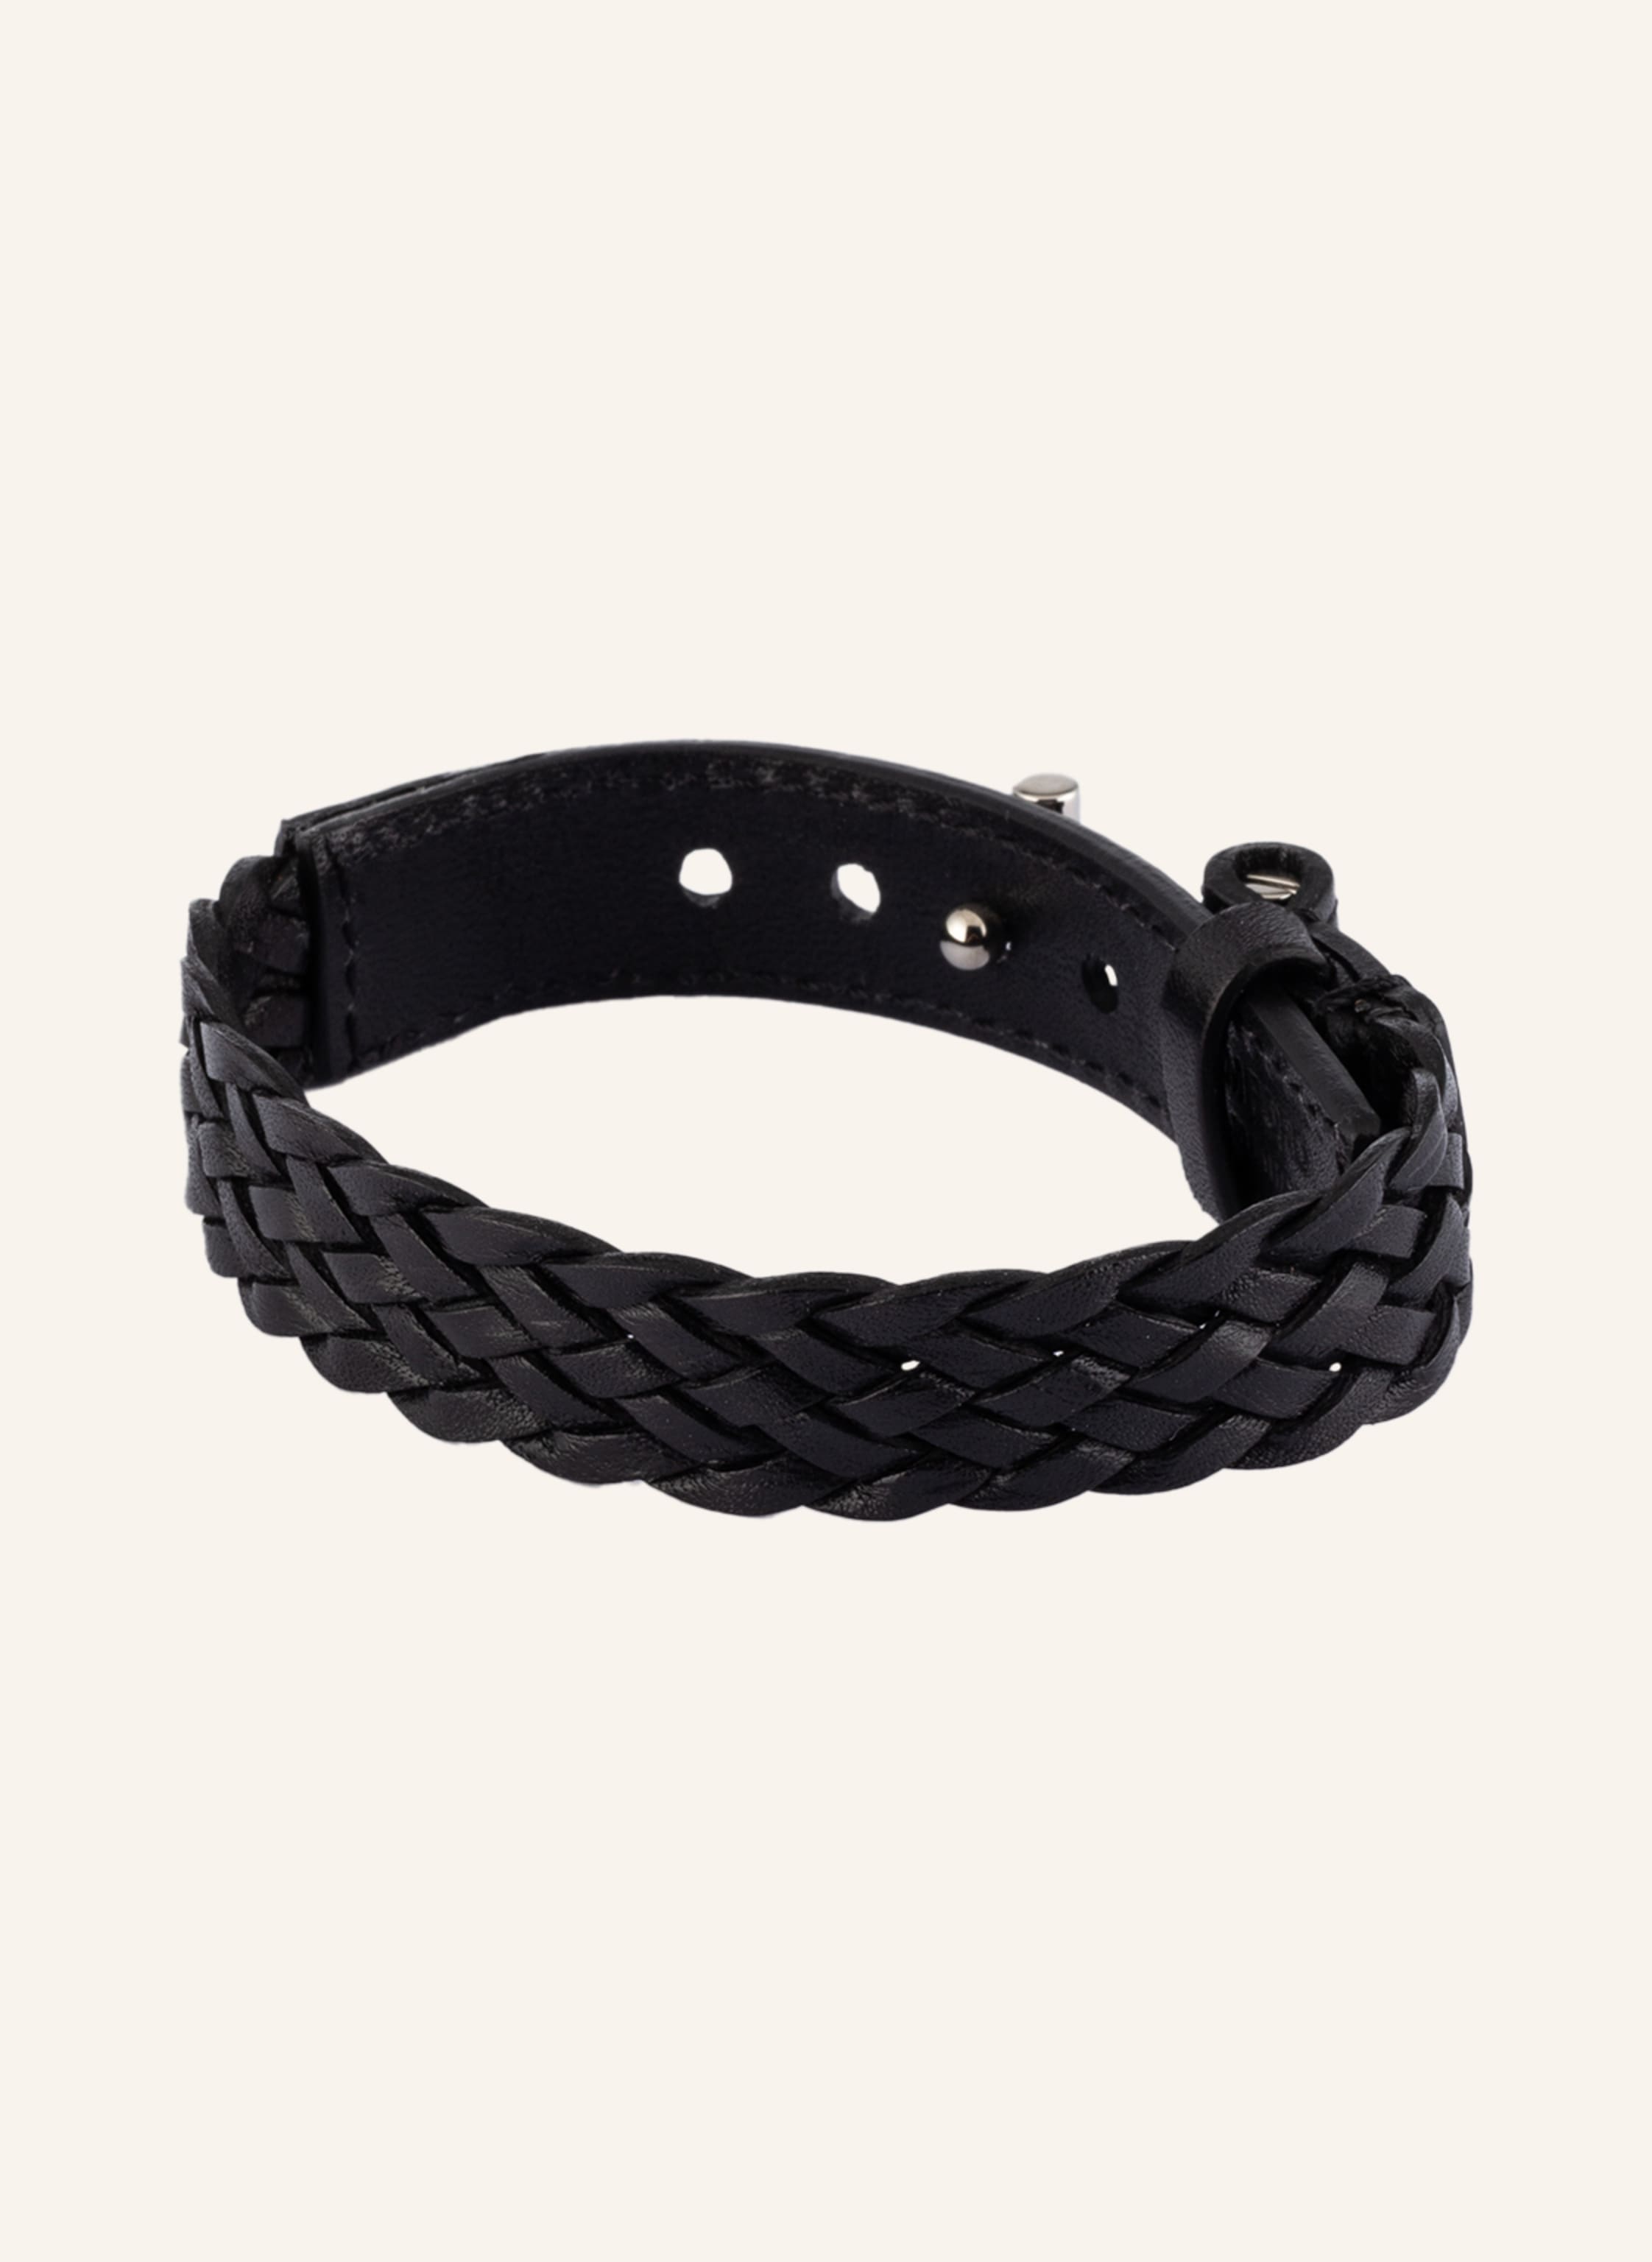 TOM FORD Leather bracelet in black/ silver | Breuninger